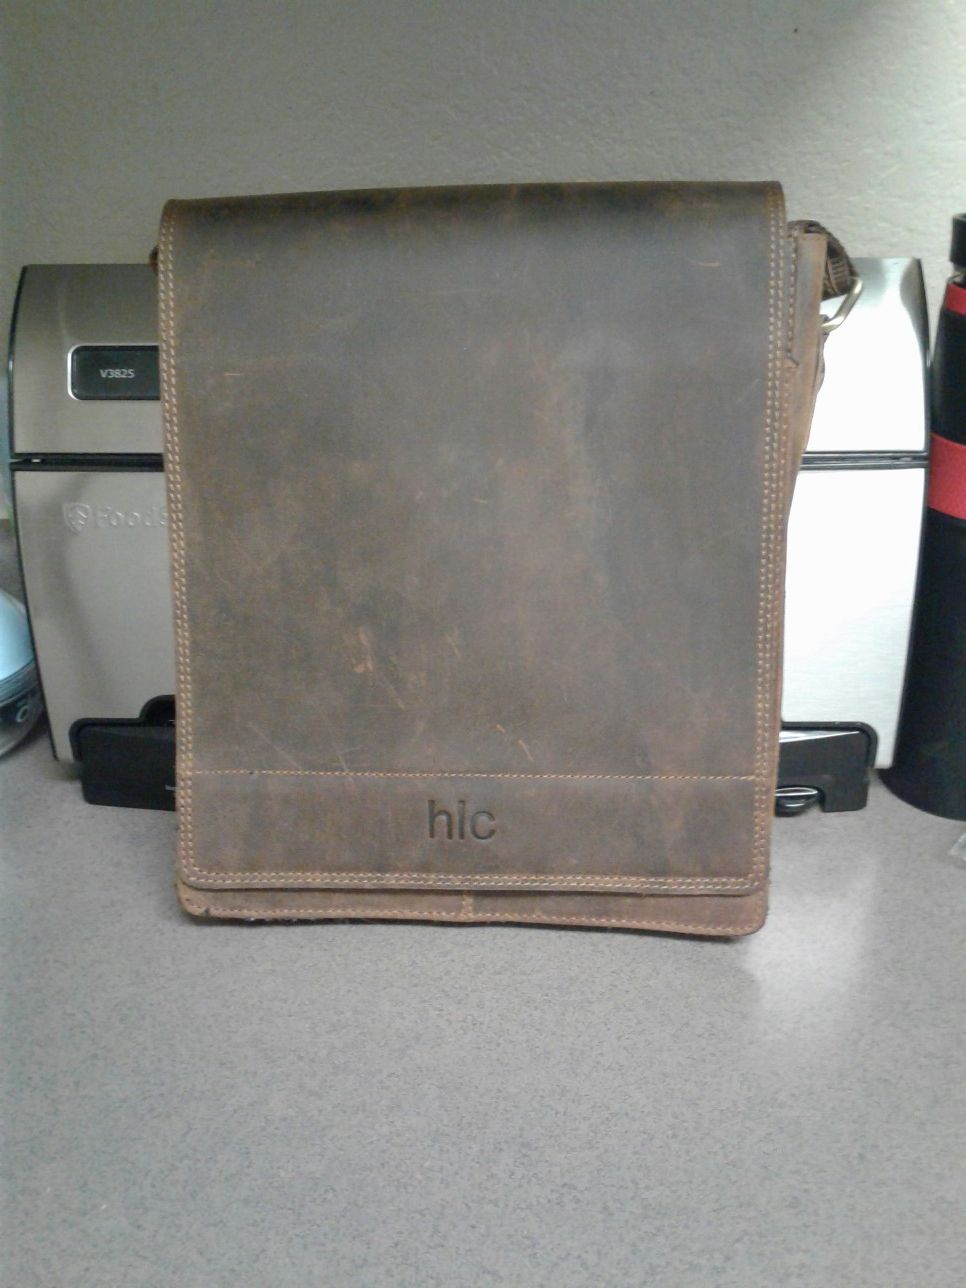 HTC Tablet Bag